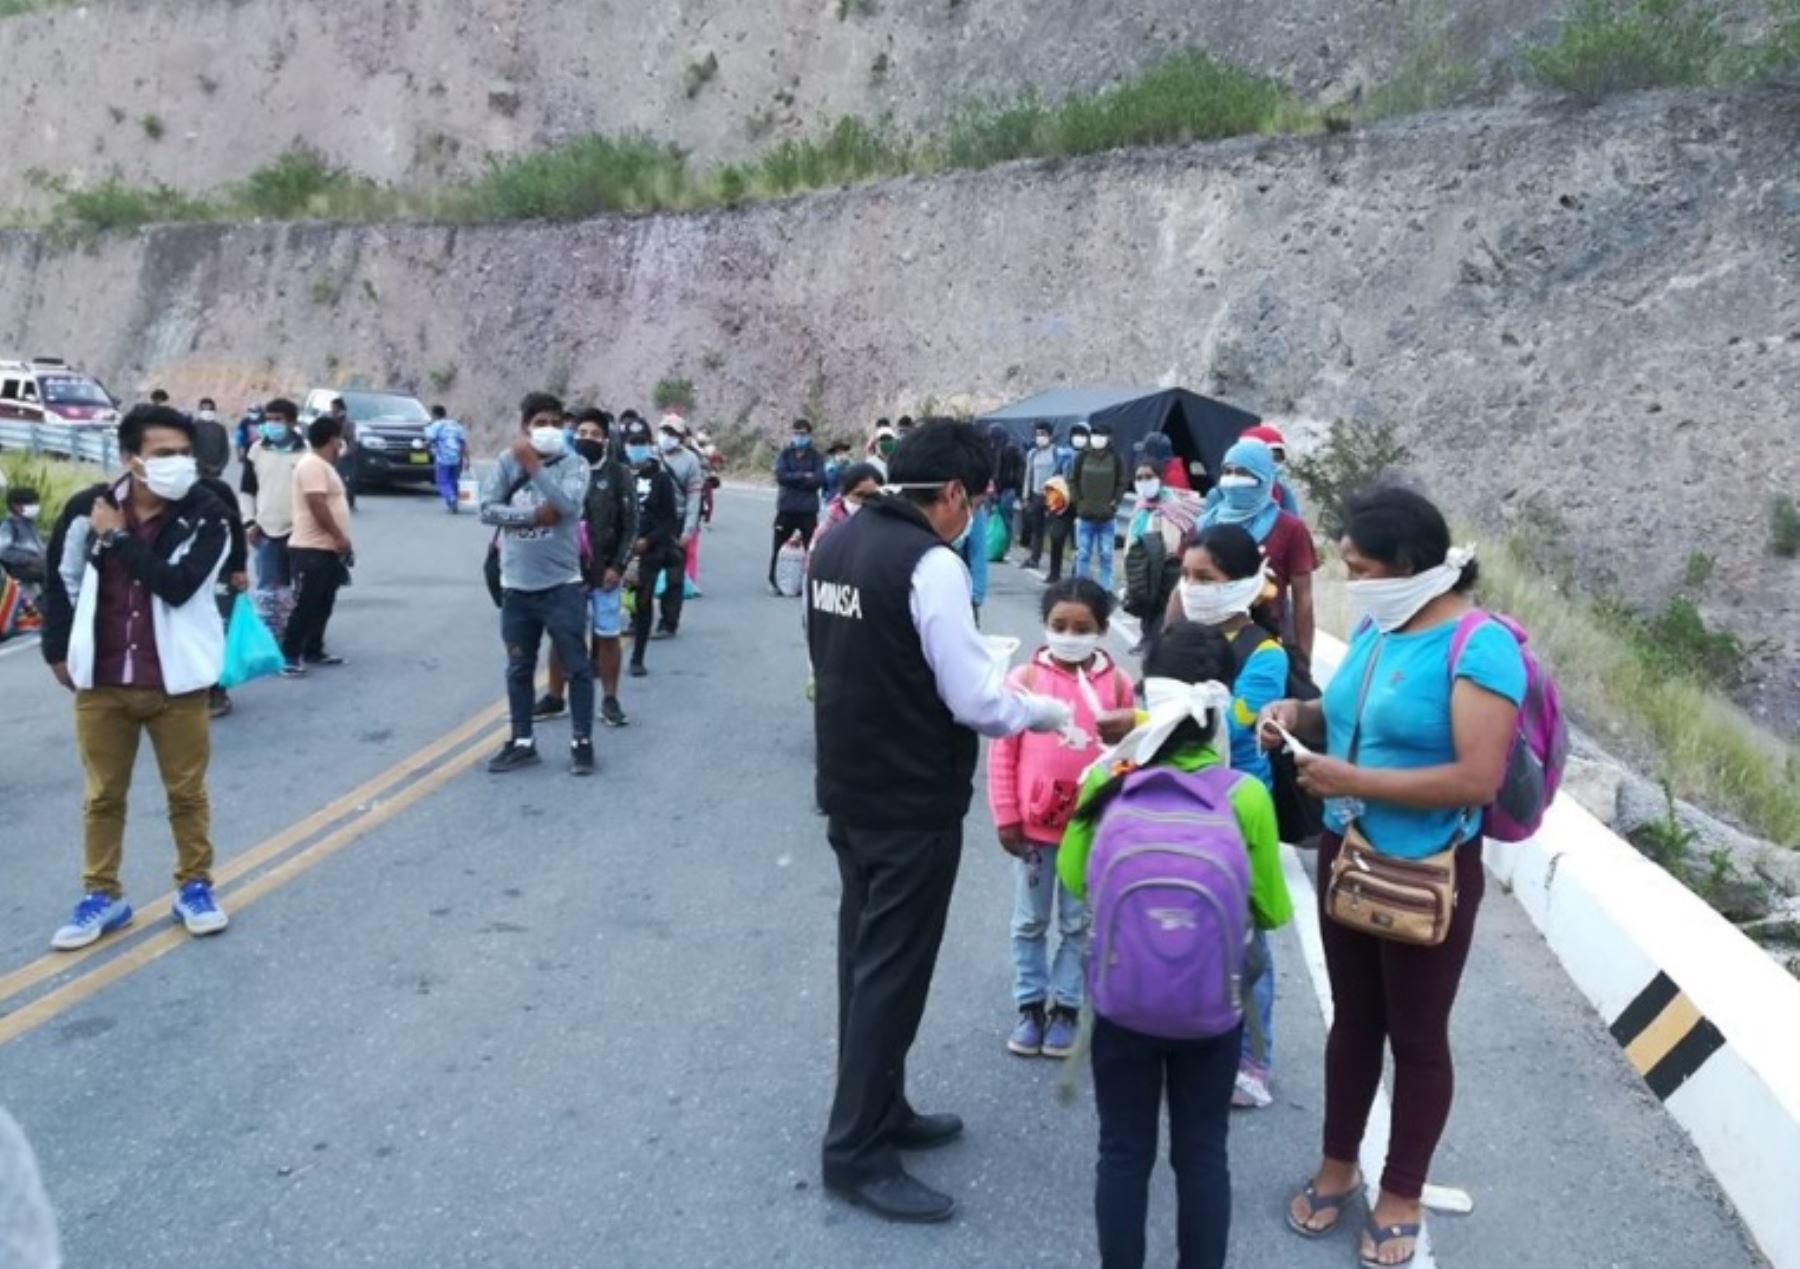 Los pobladores tacneños en situación de vulnerabilidad, que quedaron varados en Lima, serán trasladados mañana a su región en seis buses.